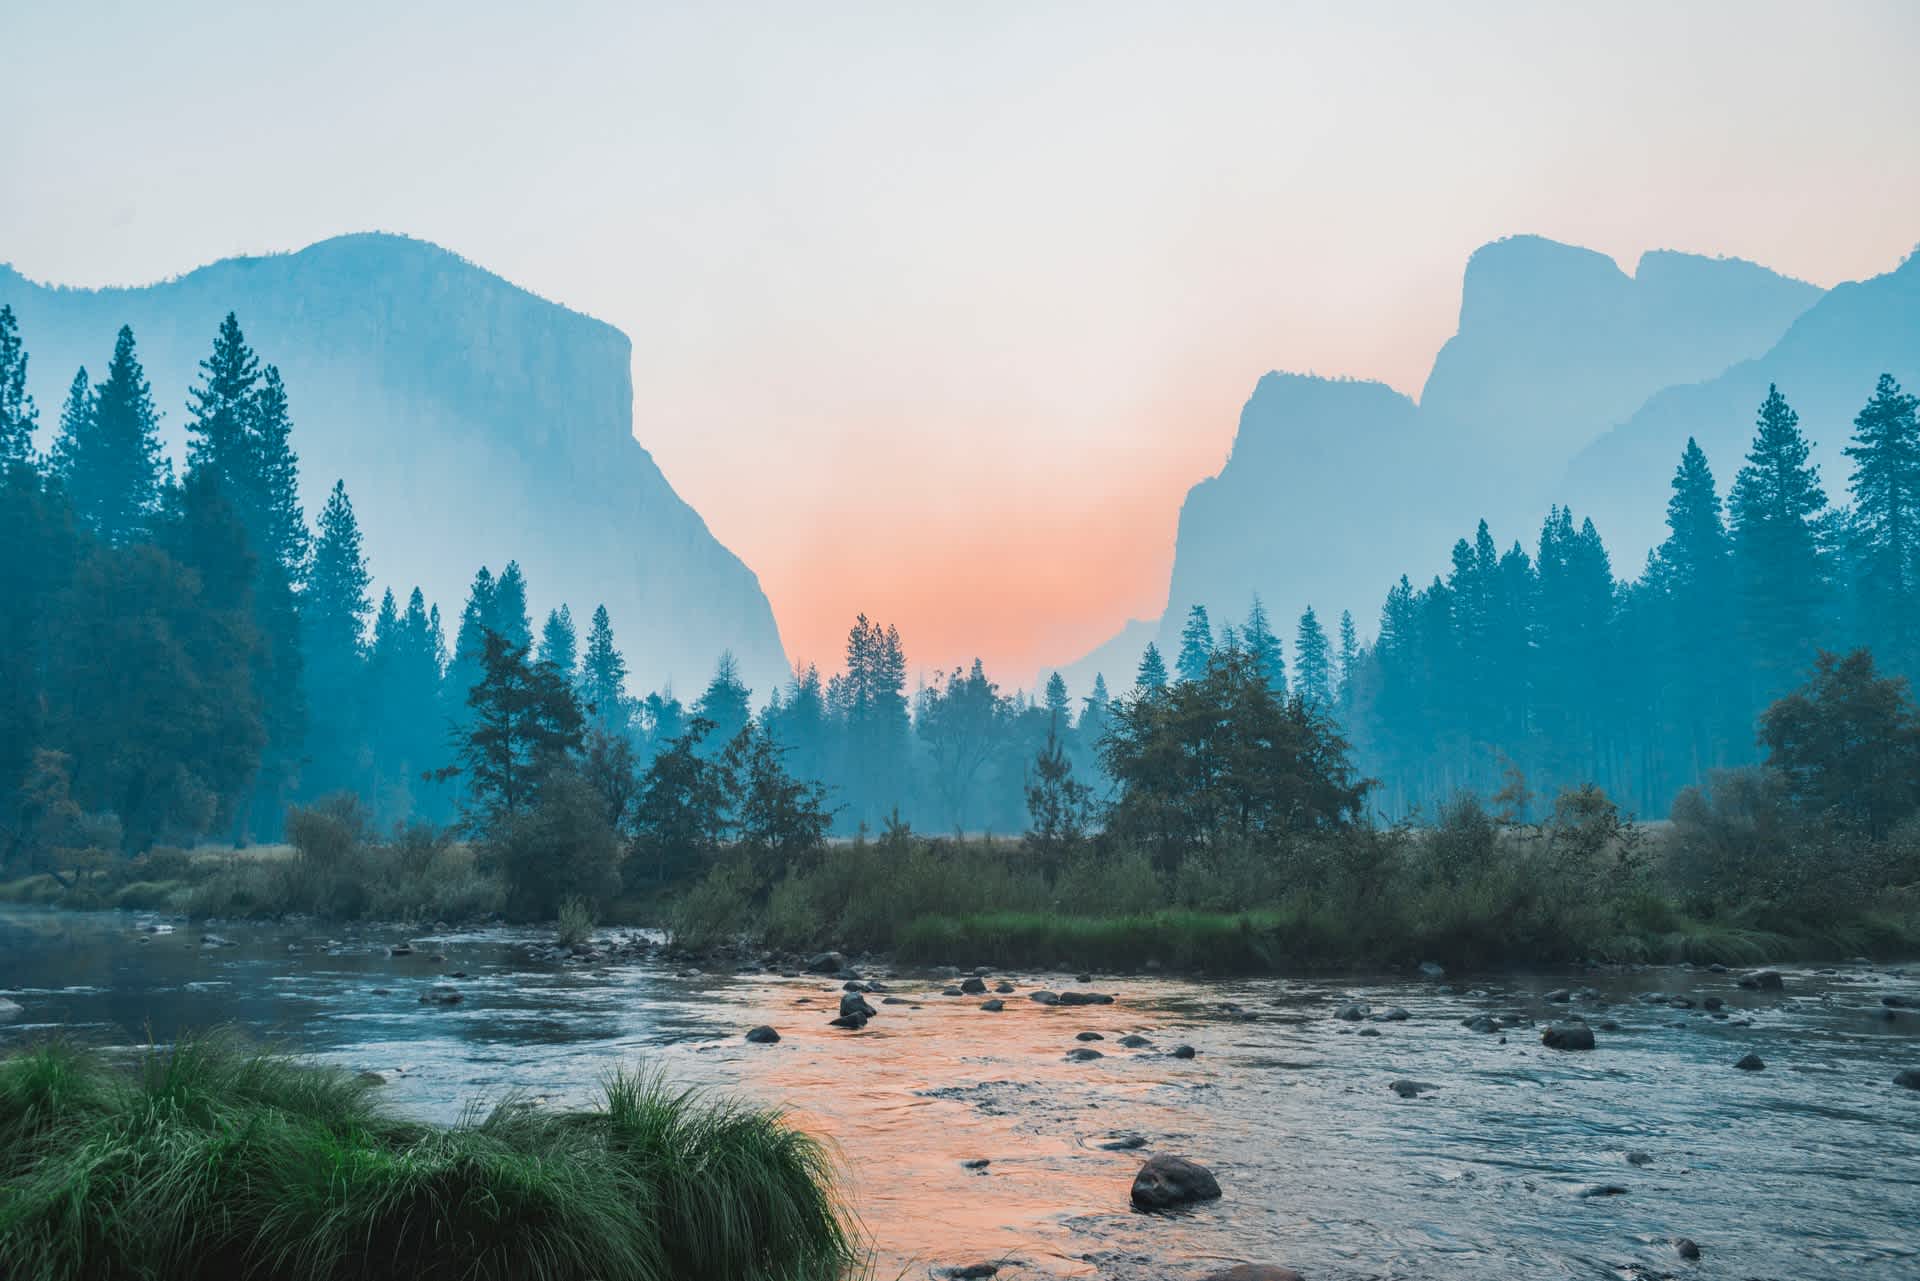 Yosemite Valley, United States